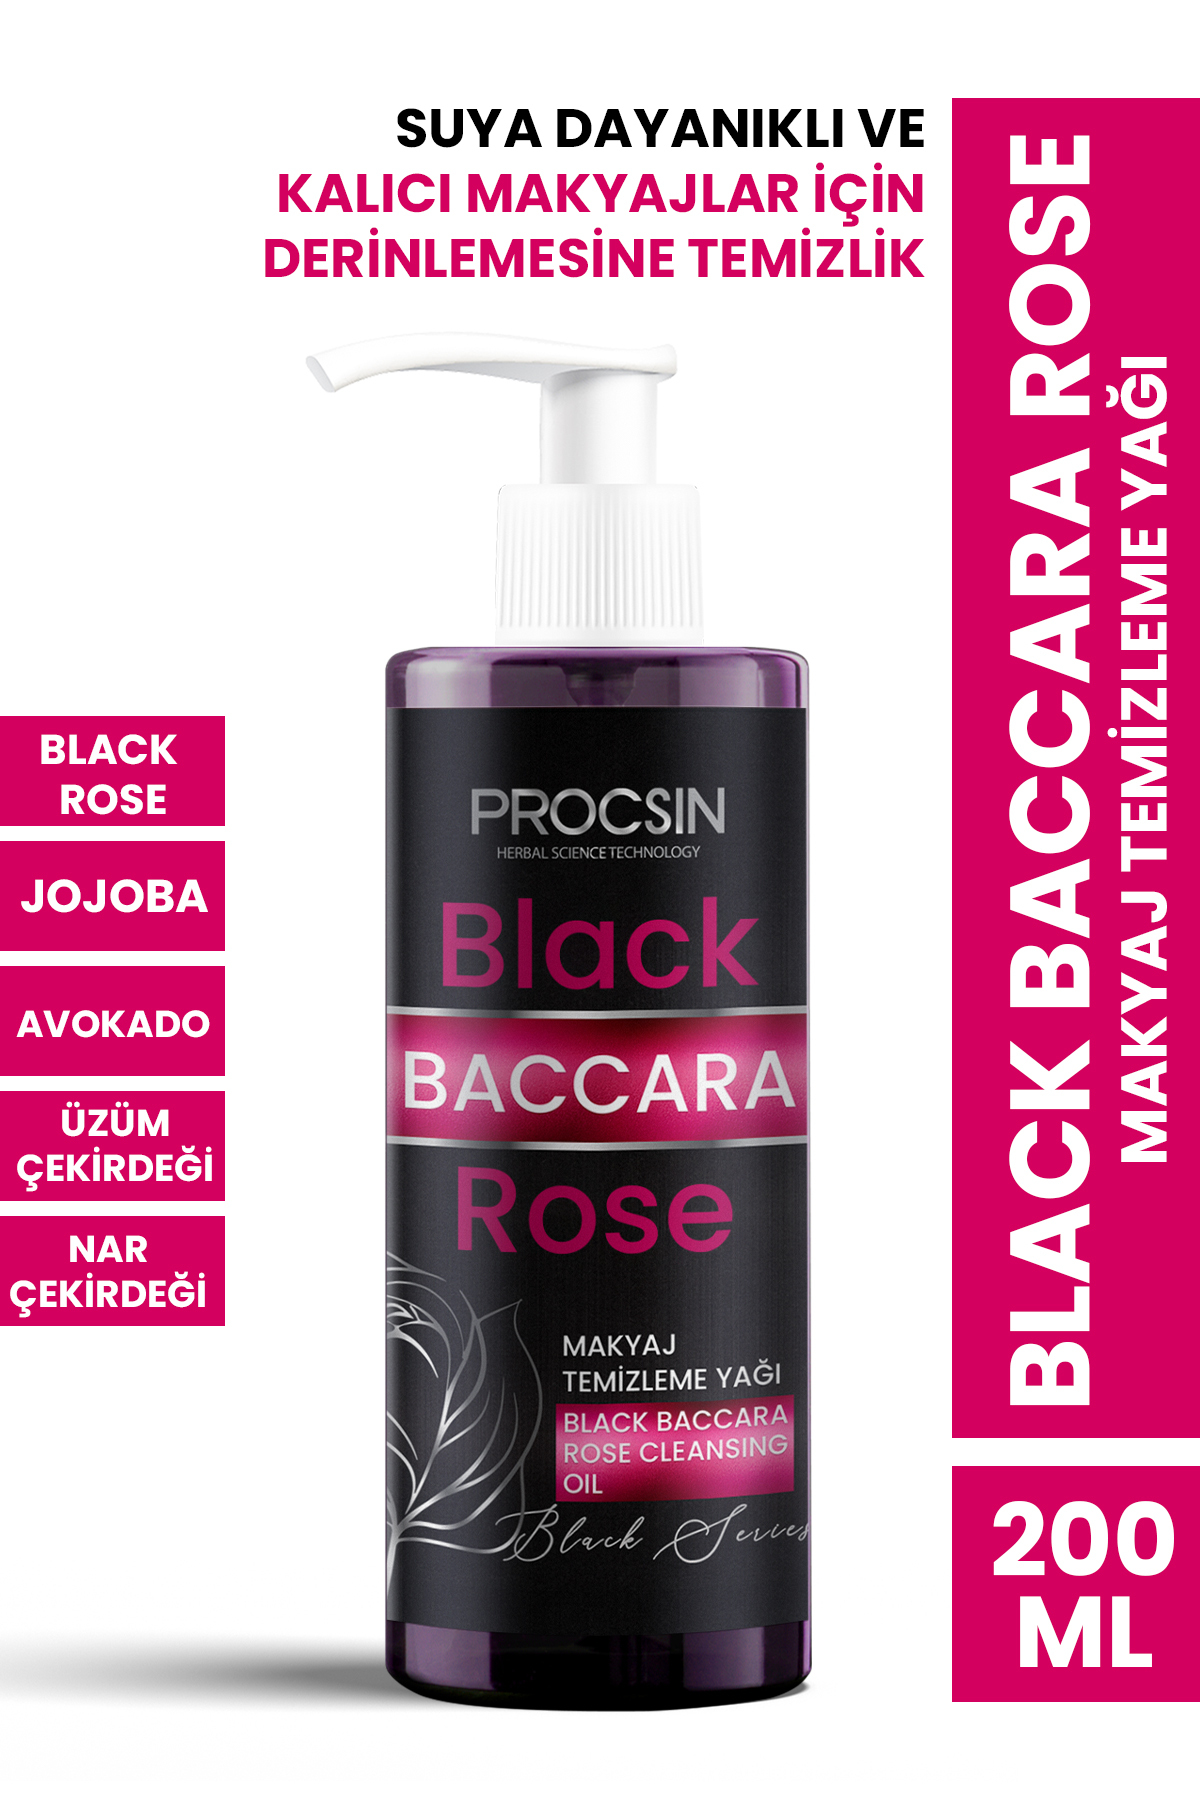 PROCSIN Black Baccara Rose Makyaj Temizleme Yağı 200 ML - 1